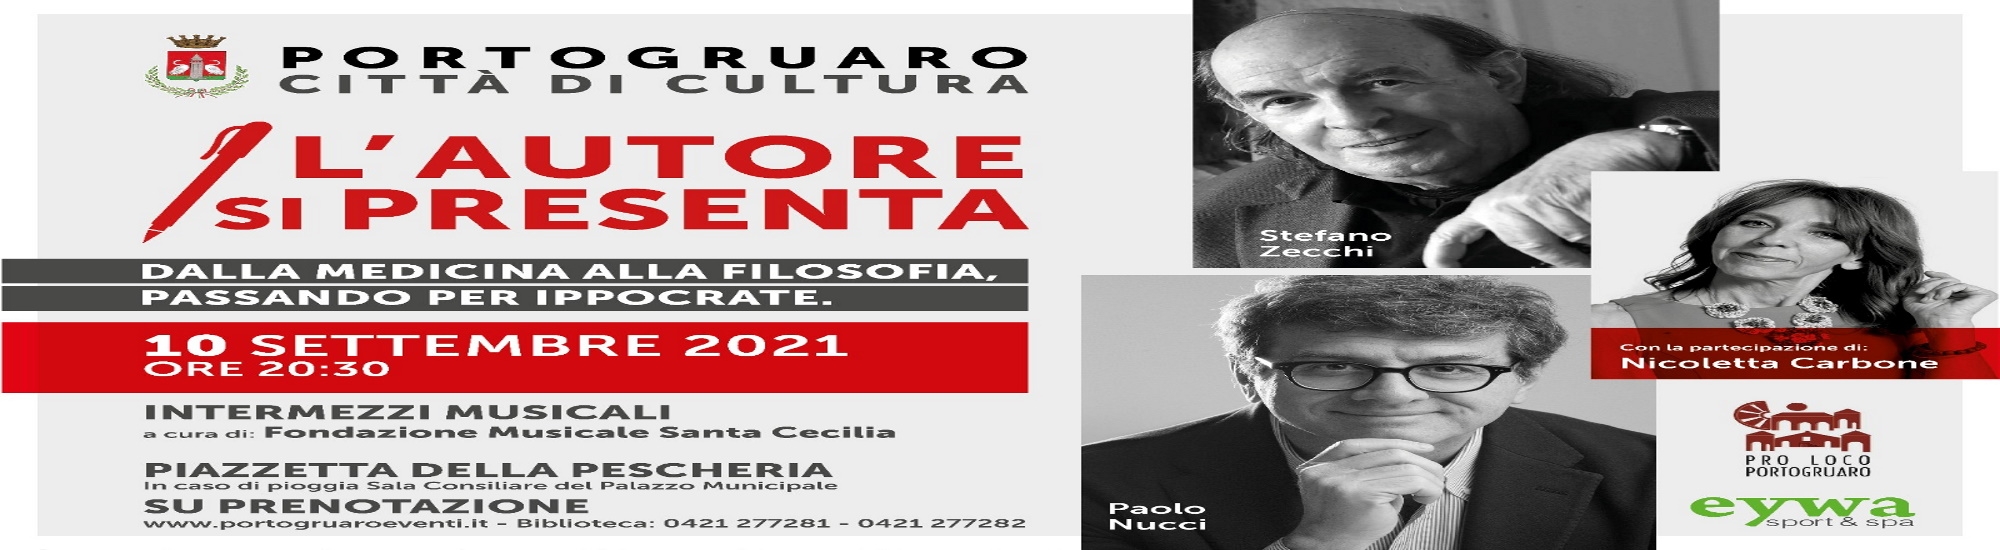 Immagine L'autore si presenta: Paolo Nucci e Stefano Zecchi